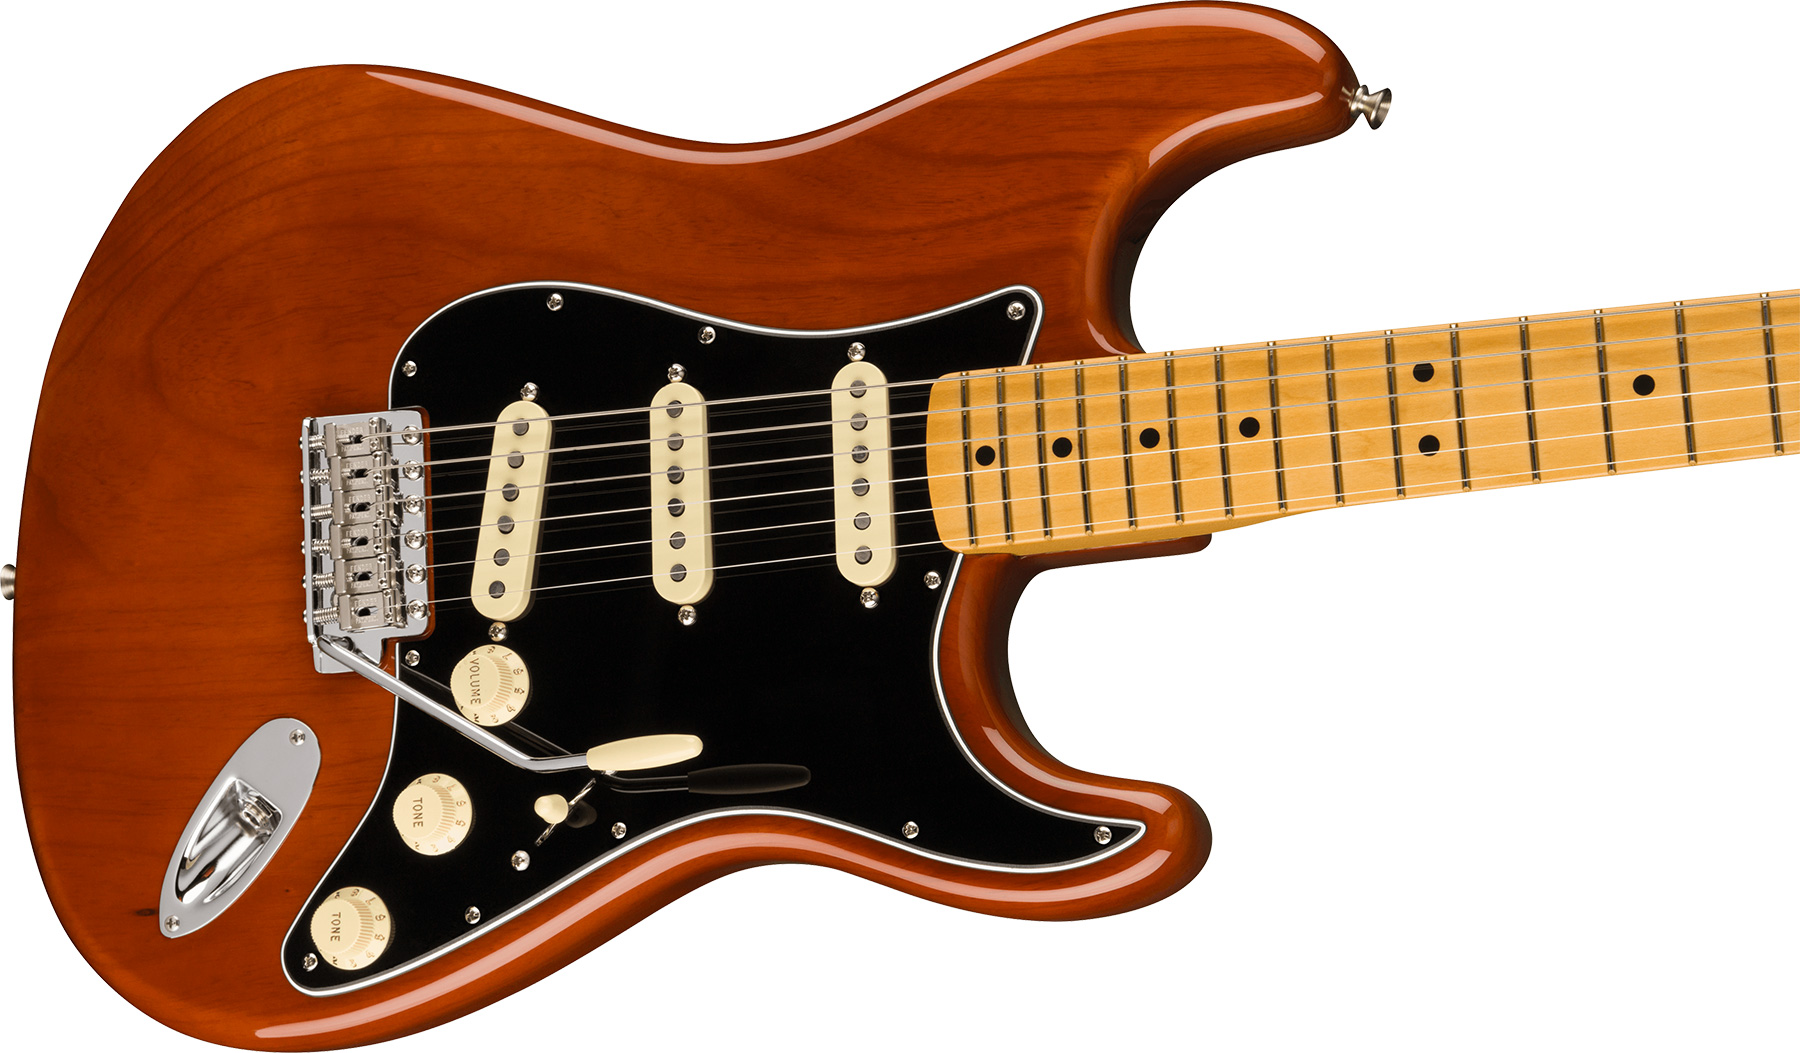 Fender Strat 1973 American Vintage Ii Usa 3s Trem Mn - Mocha - Guitare Électrique Forme Str - Variation 2